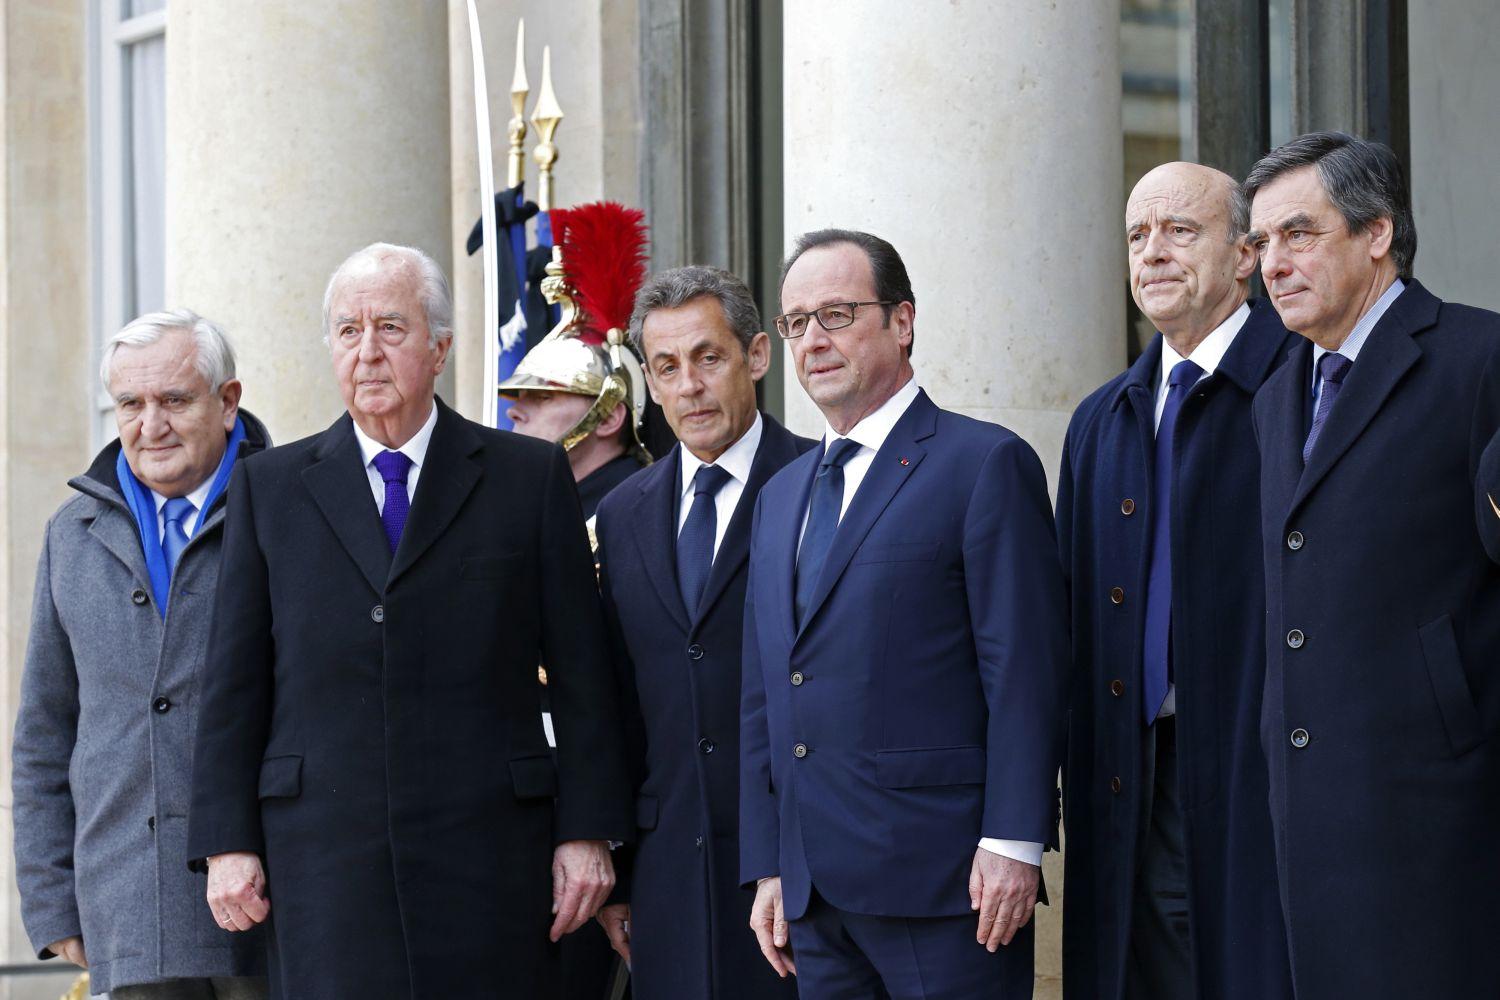 Kiállás a volt miniszterelnökökkel. Nicolas Sarkozy volt és Francois Hollande jelenlegi államfő hétfőn Jean-Pierre Raffarin, Edouard Balladur, Alain Juppé és Francois Fillon társaságában